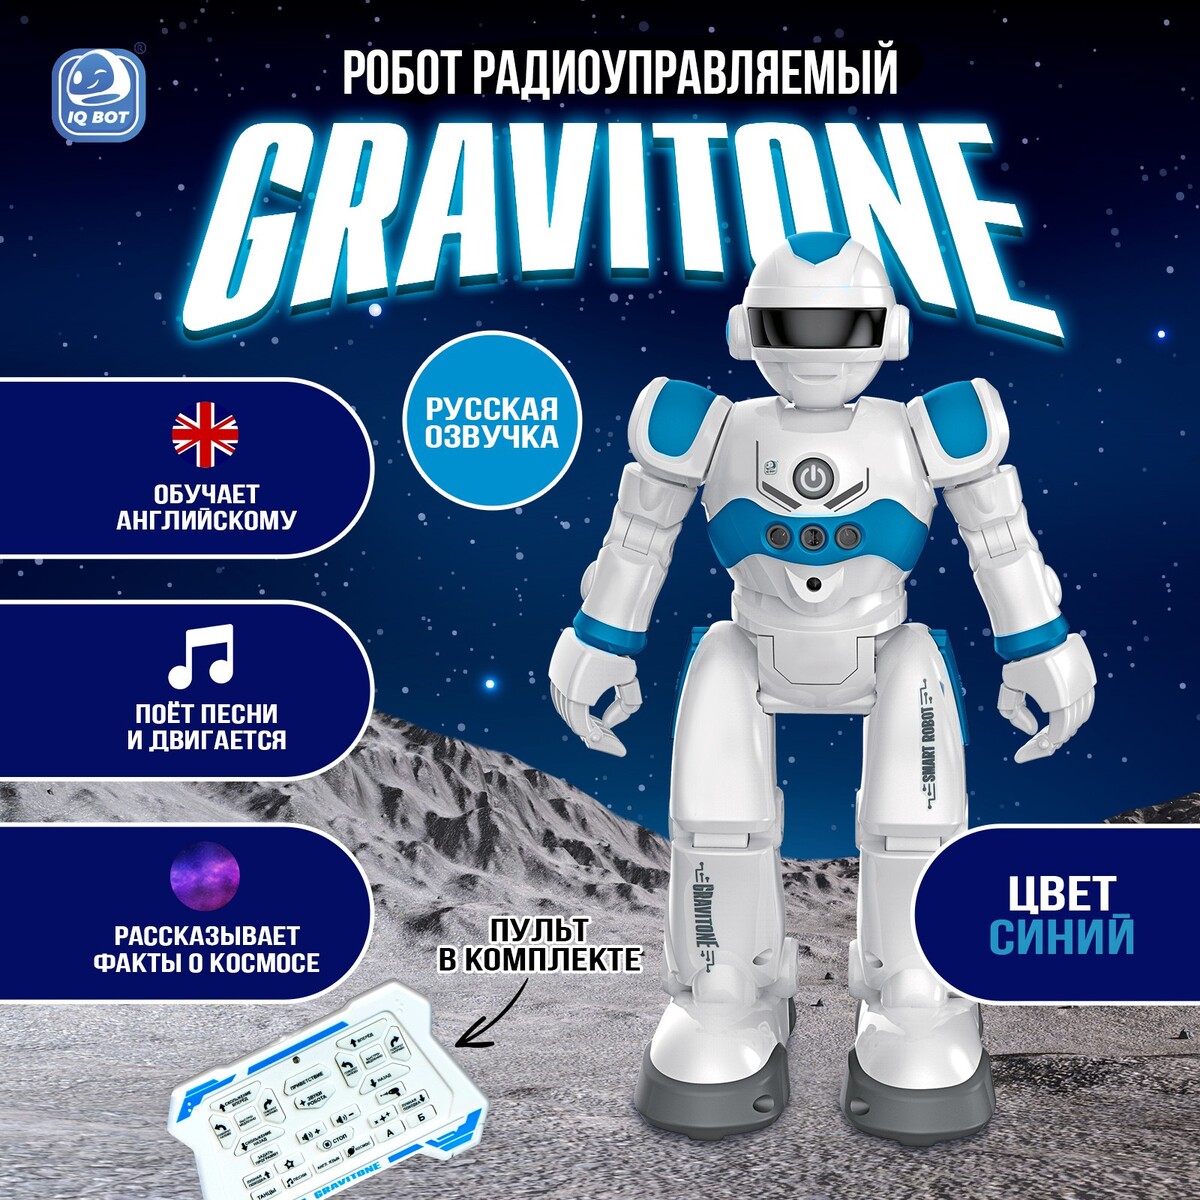 Робот радиоуправляемый iq bot gravitone, русское озвучивание, цвет синий робот радиоуправляемый iq bot gravitone русское озвучивание красный